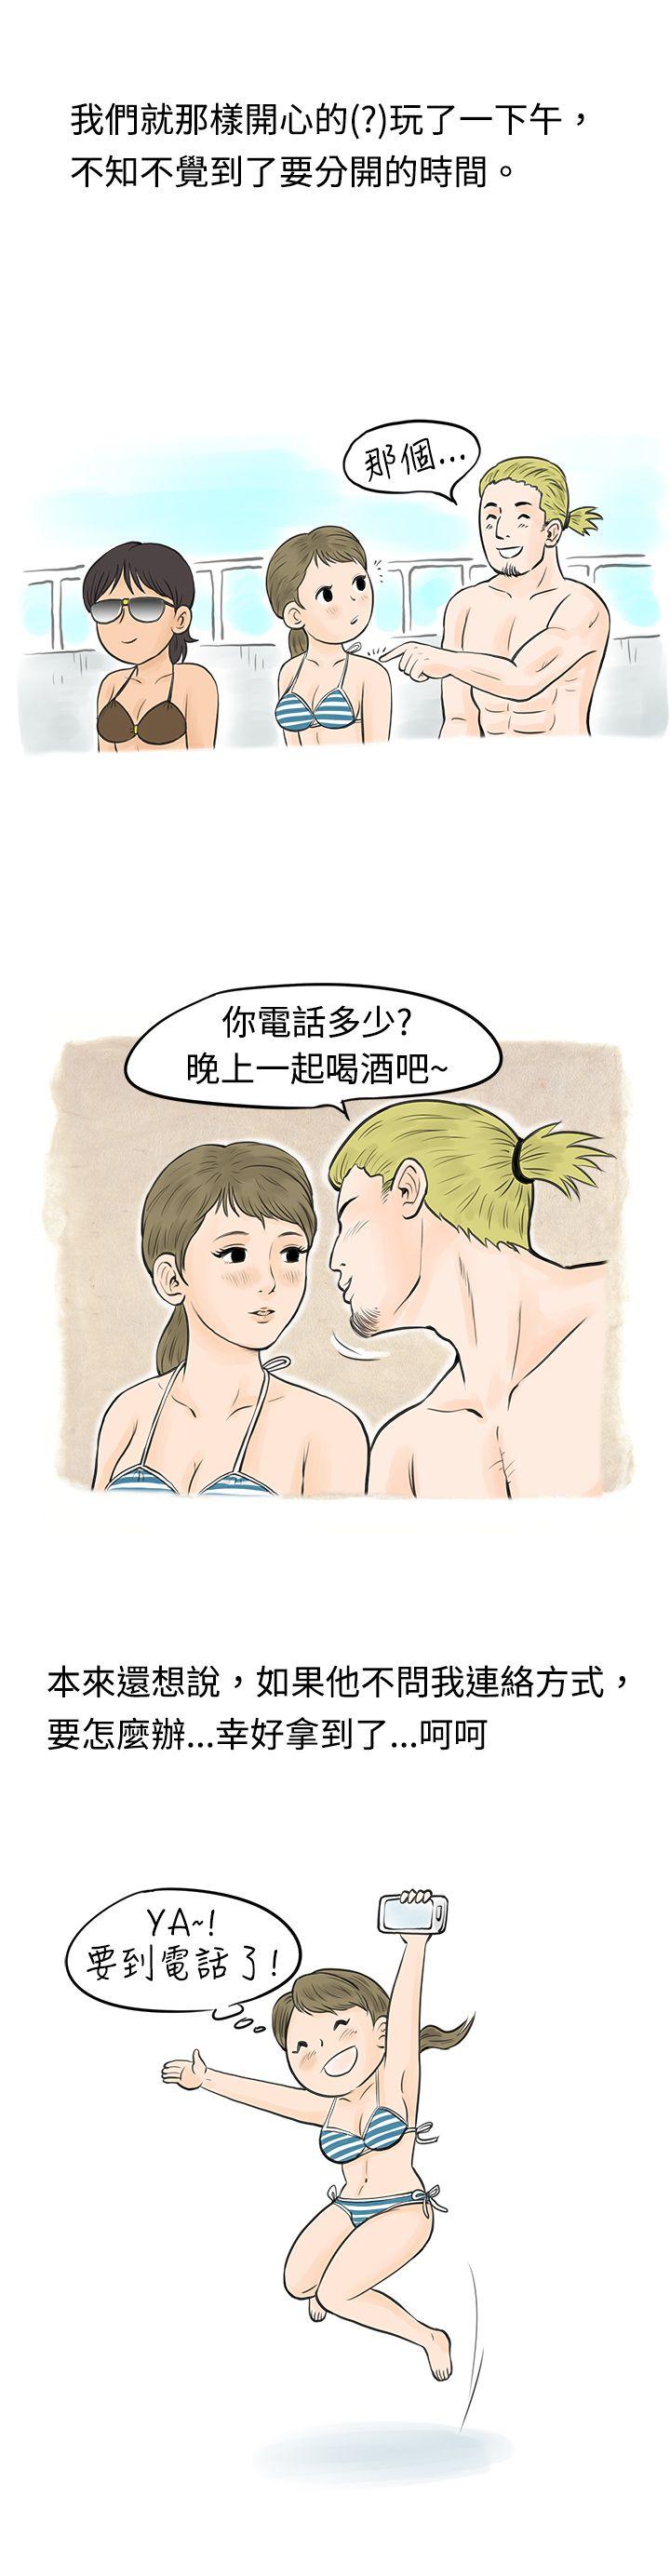 韩国污漫画 秘密Story 在梨泰院游泳池中的小故事(下) 4